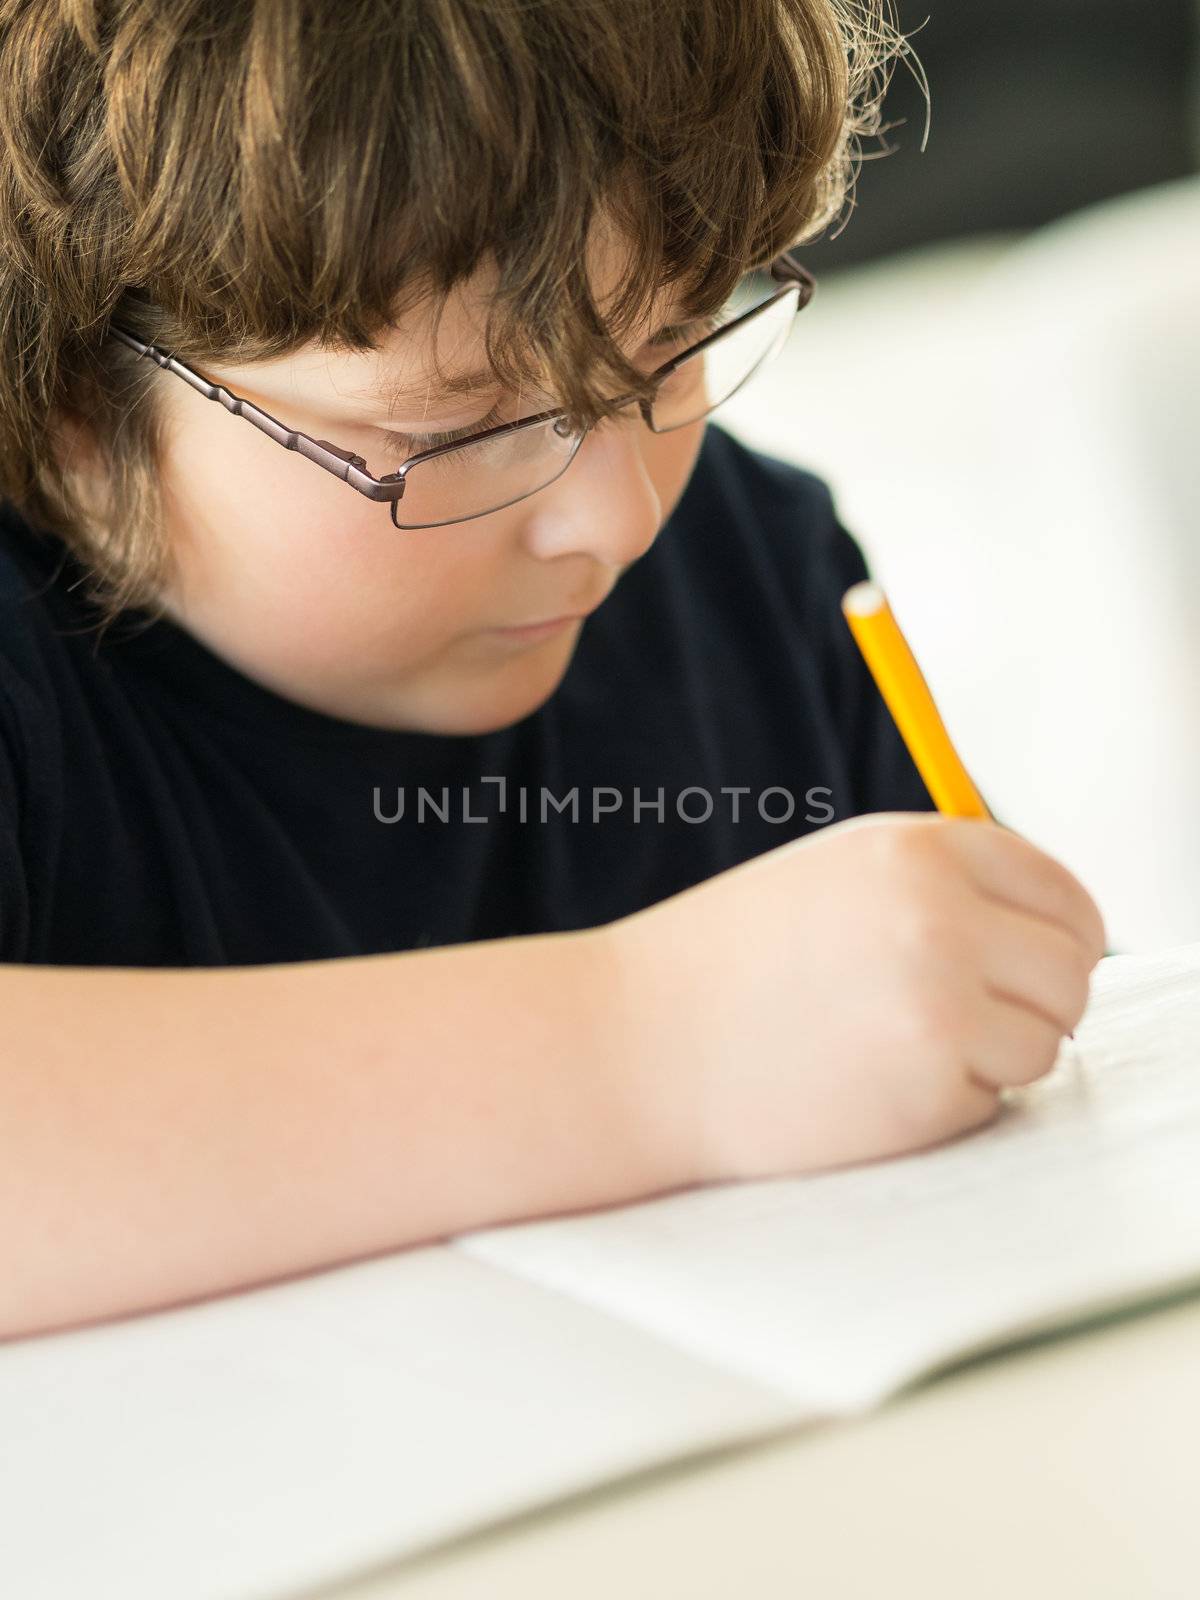 Cute little boy doing his homework